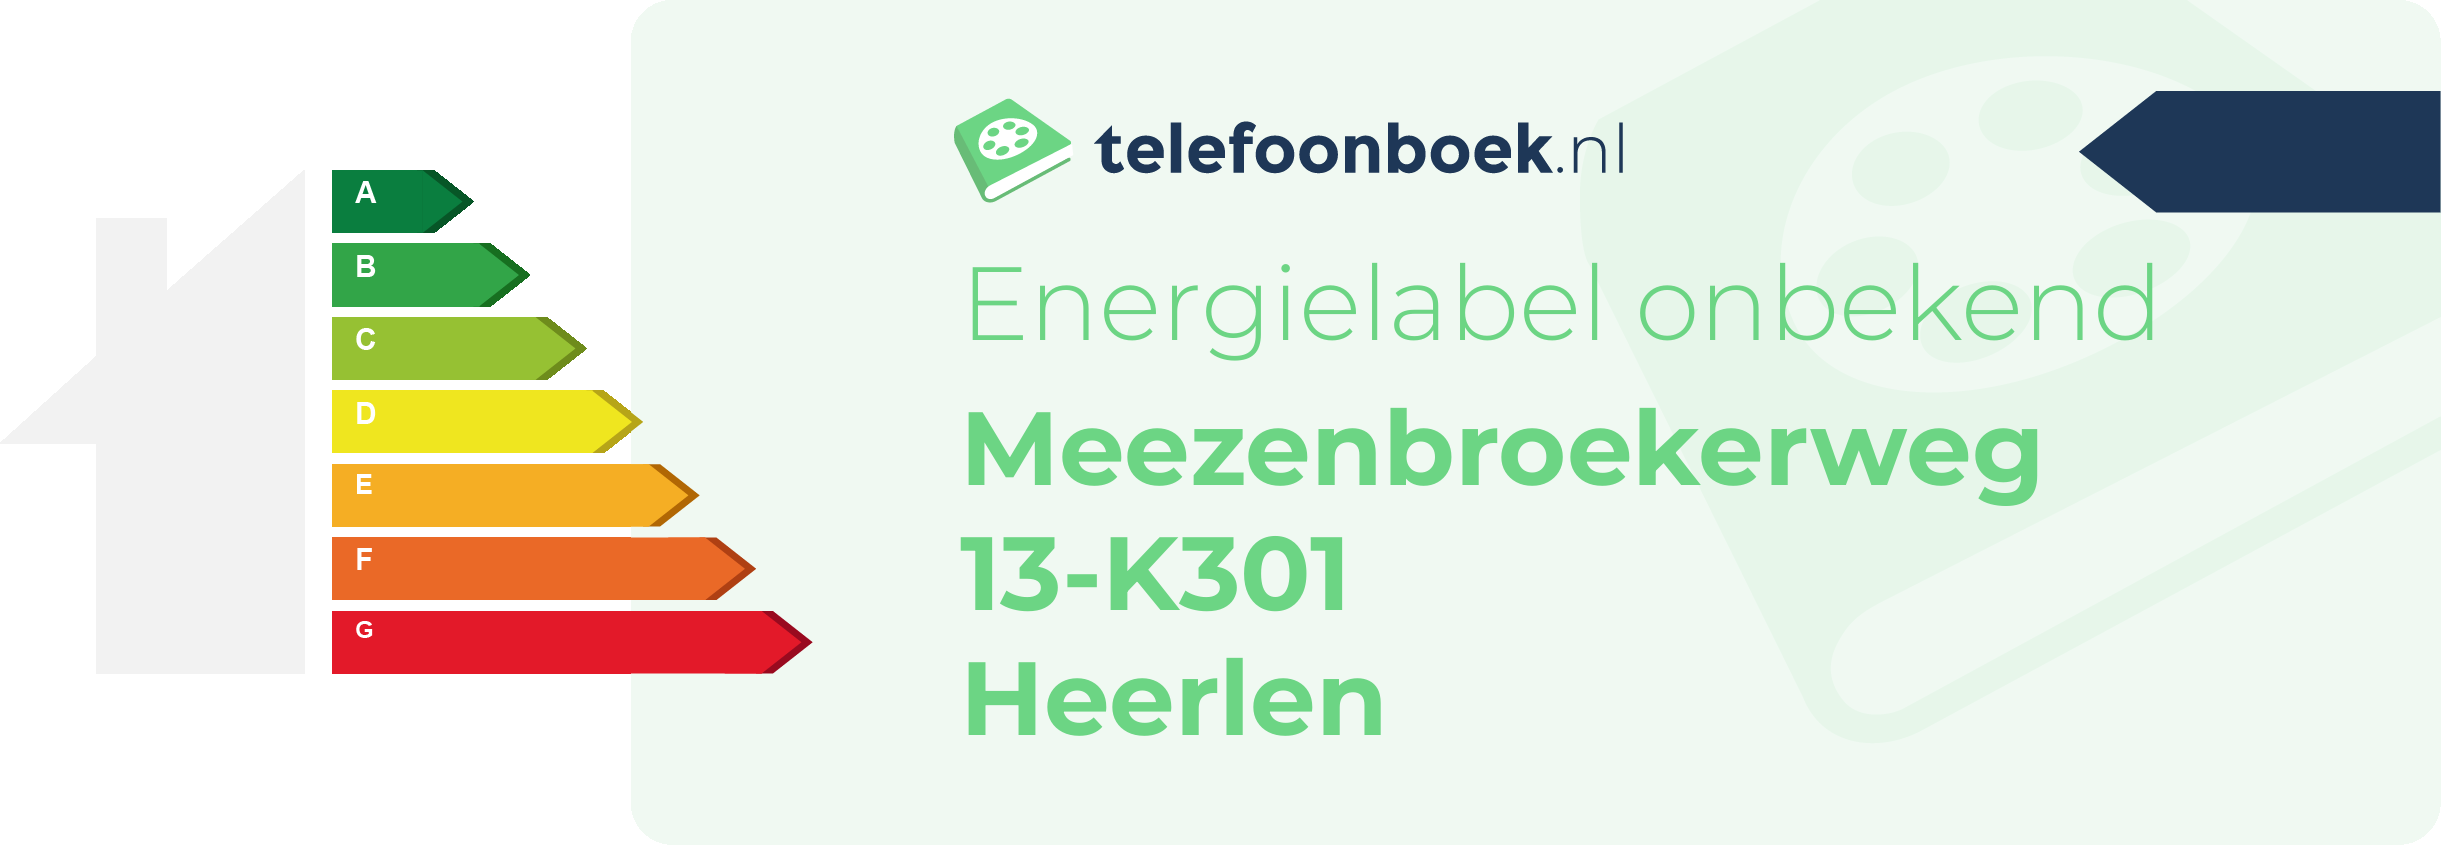 Energielabel Meezenbroekerweg 13-K301 Heerlen